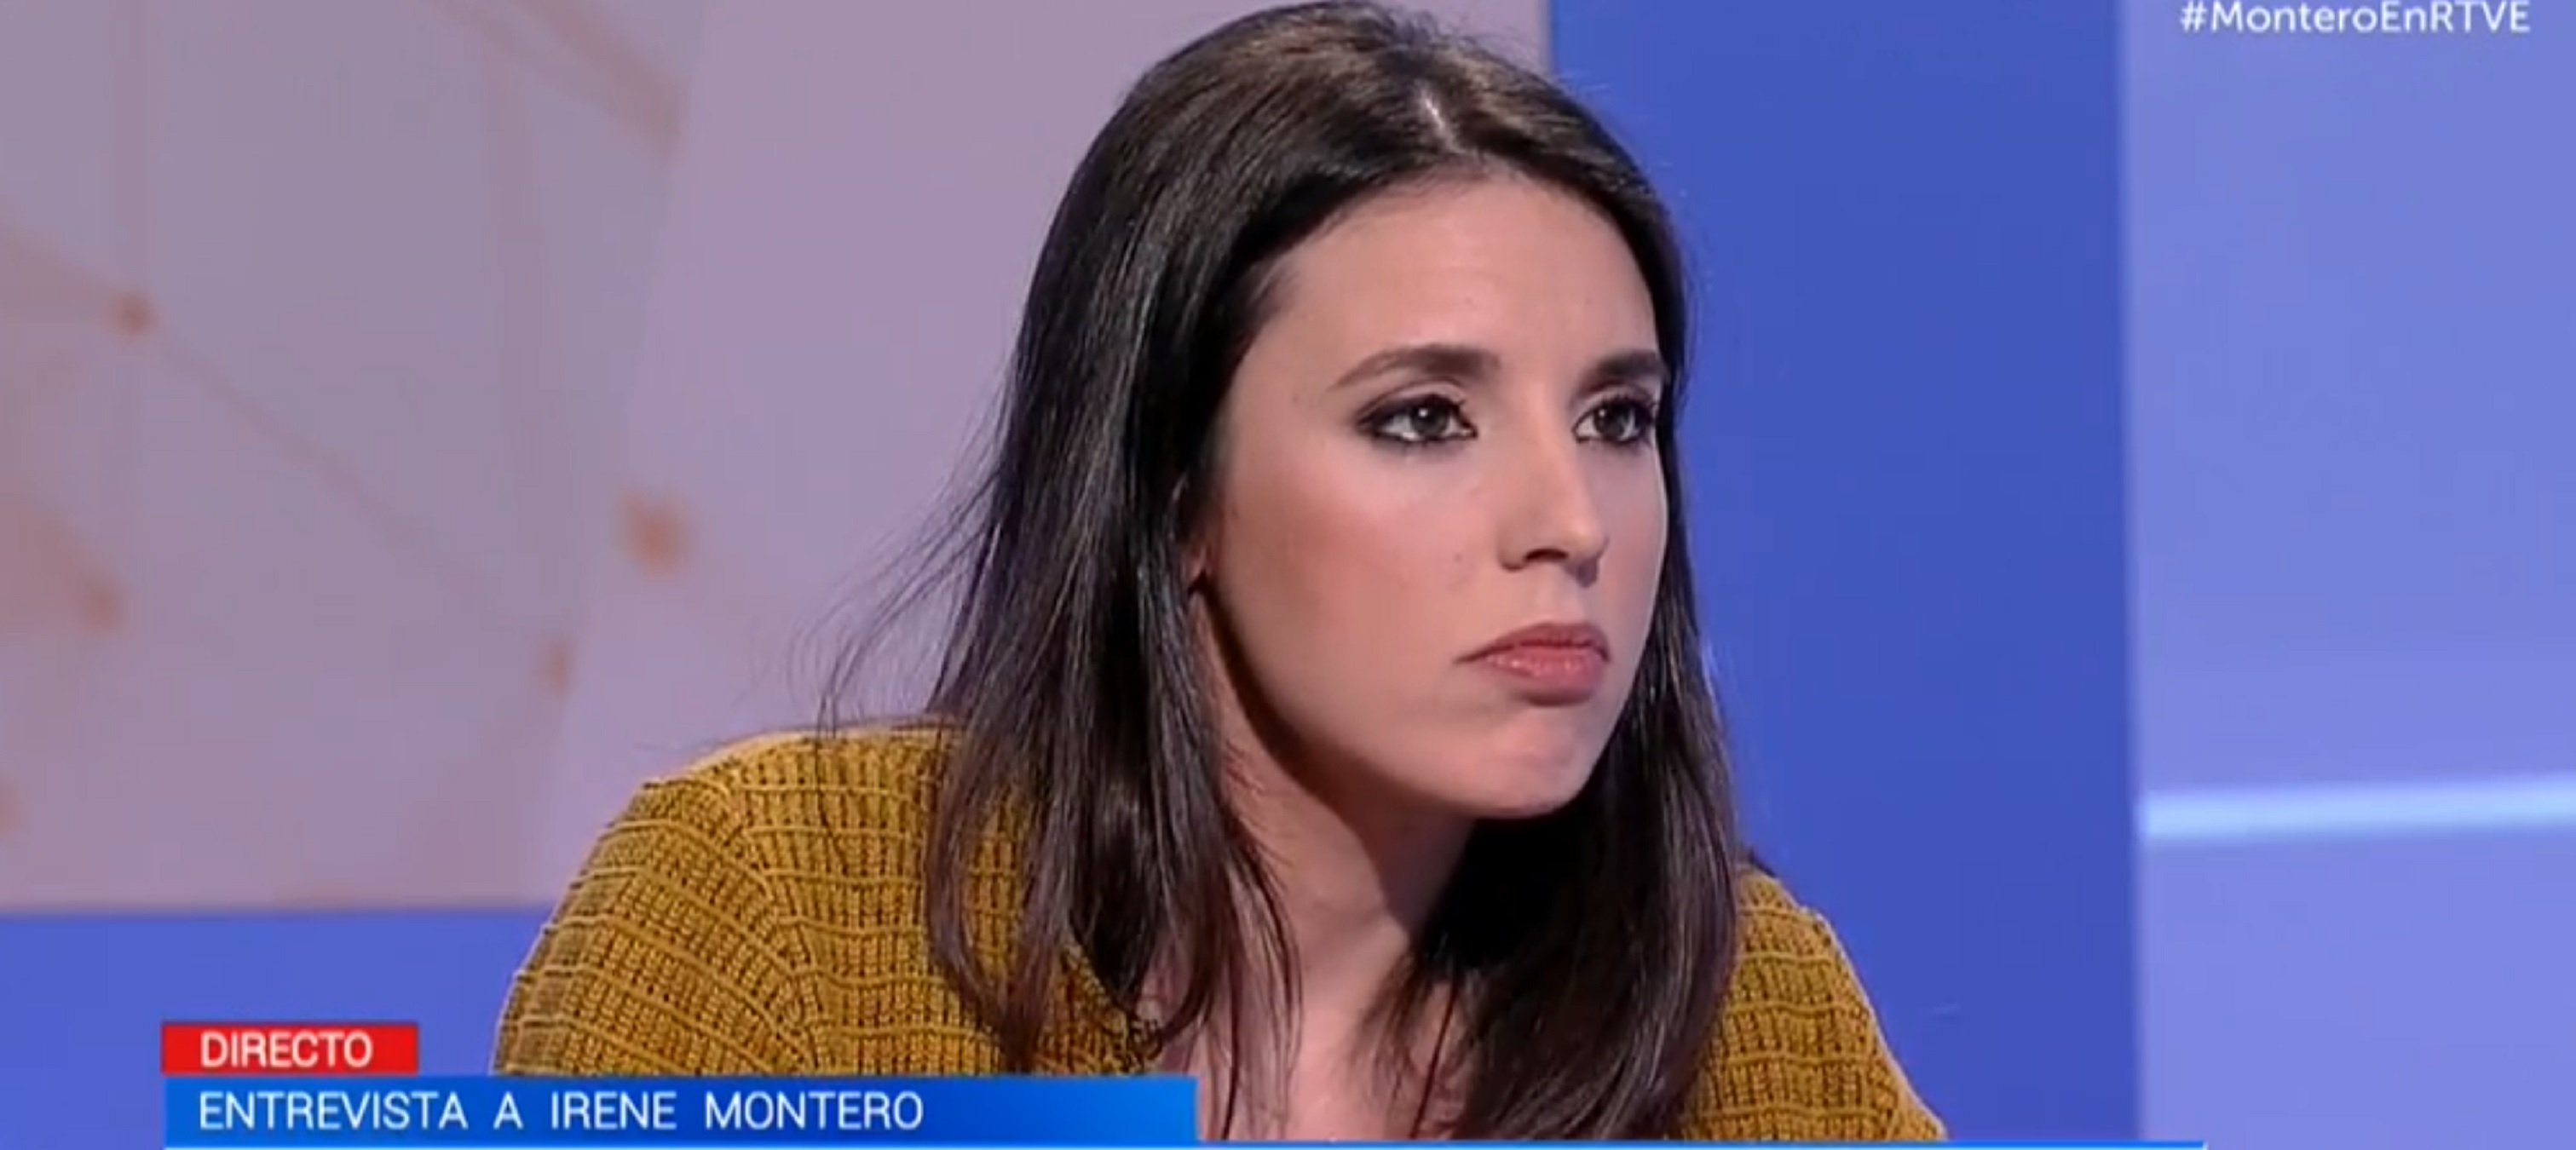 Irene Montero dice 'presos políticos' en TVE y el machismo arde: "Miss boba"